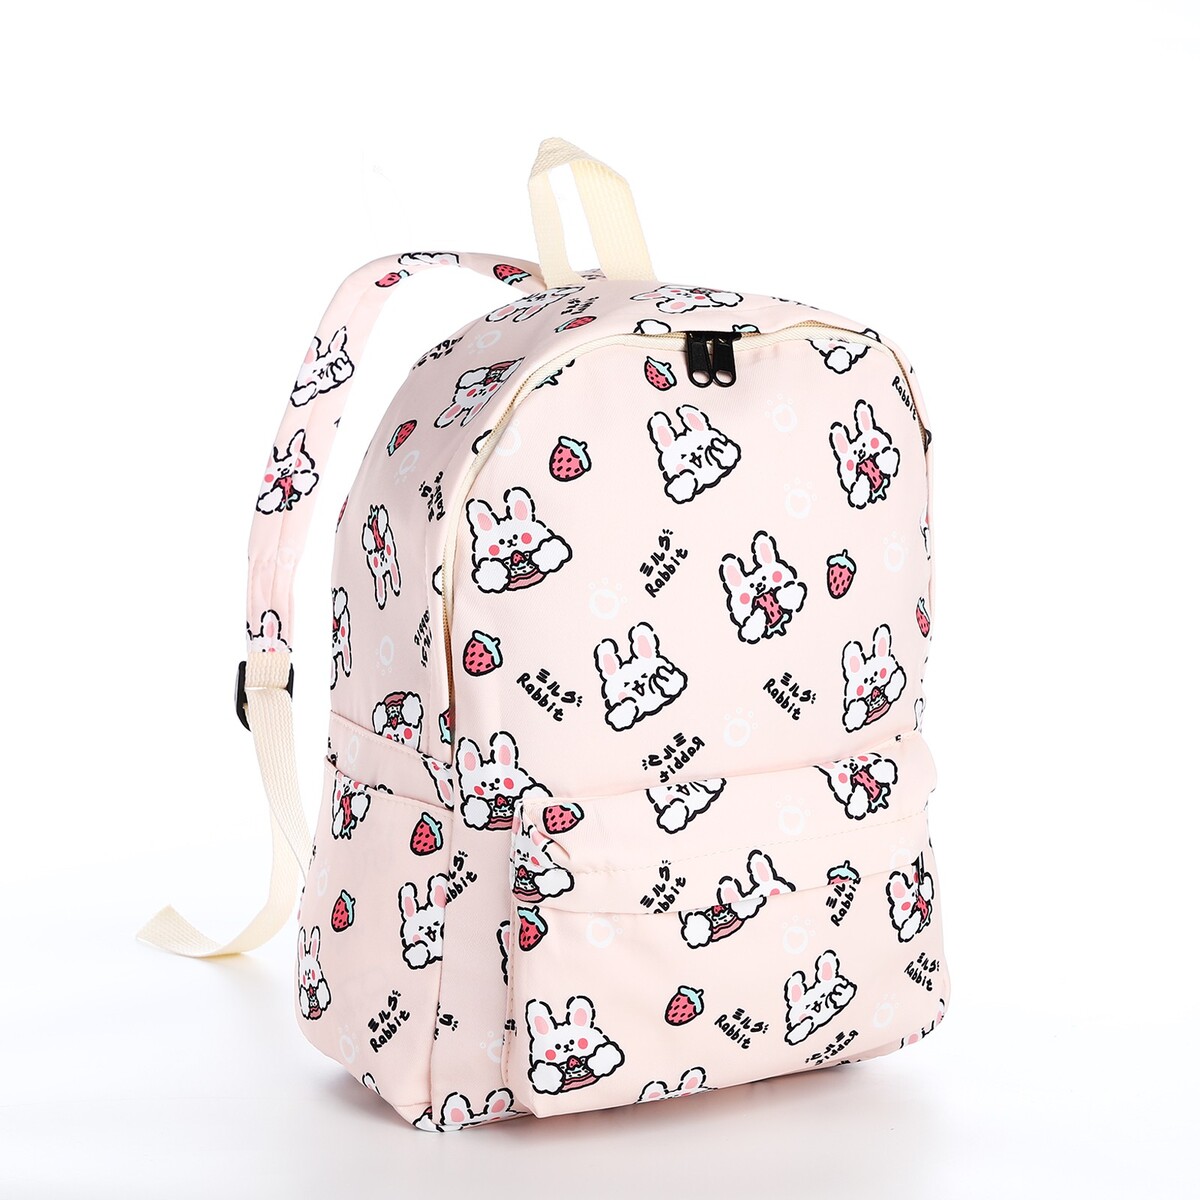 Рюкзак школьный из текстиля на молнии, 3 кармана, цвет бежевый/розовый рюкзак детский на молнии 3 наружных кармана бежевый